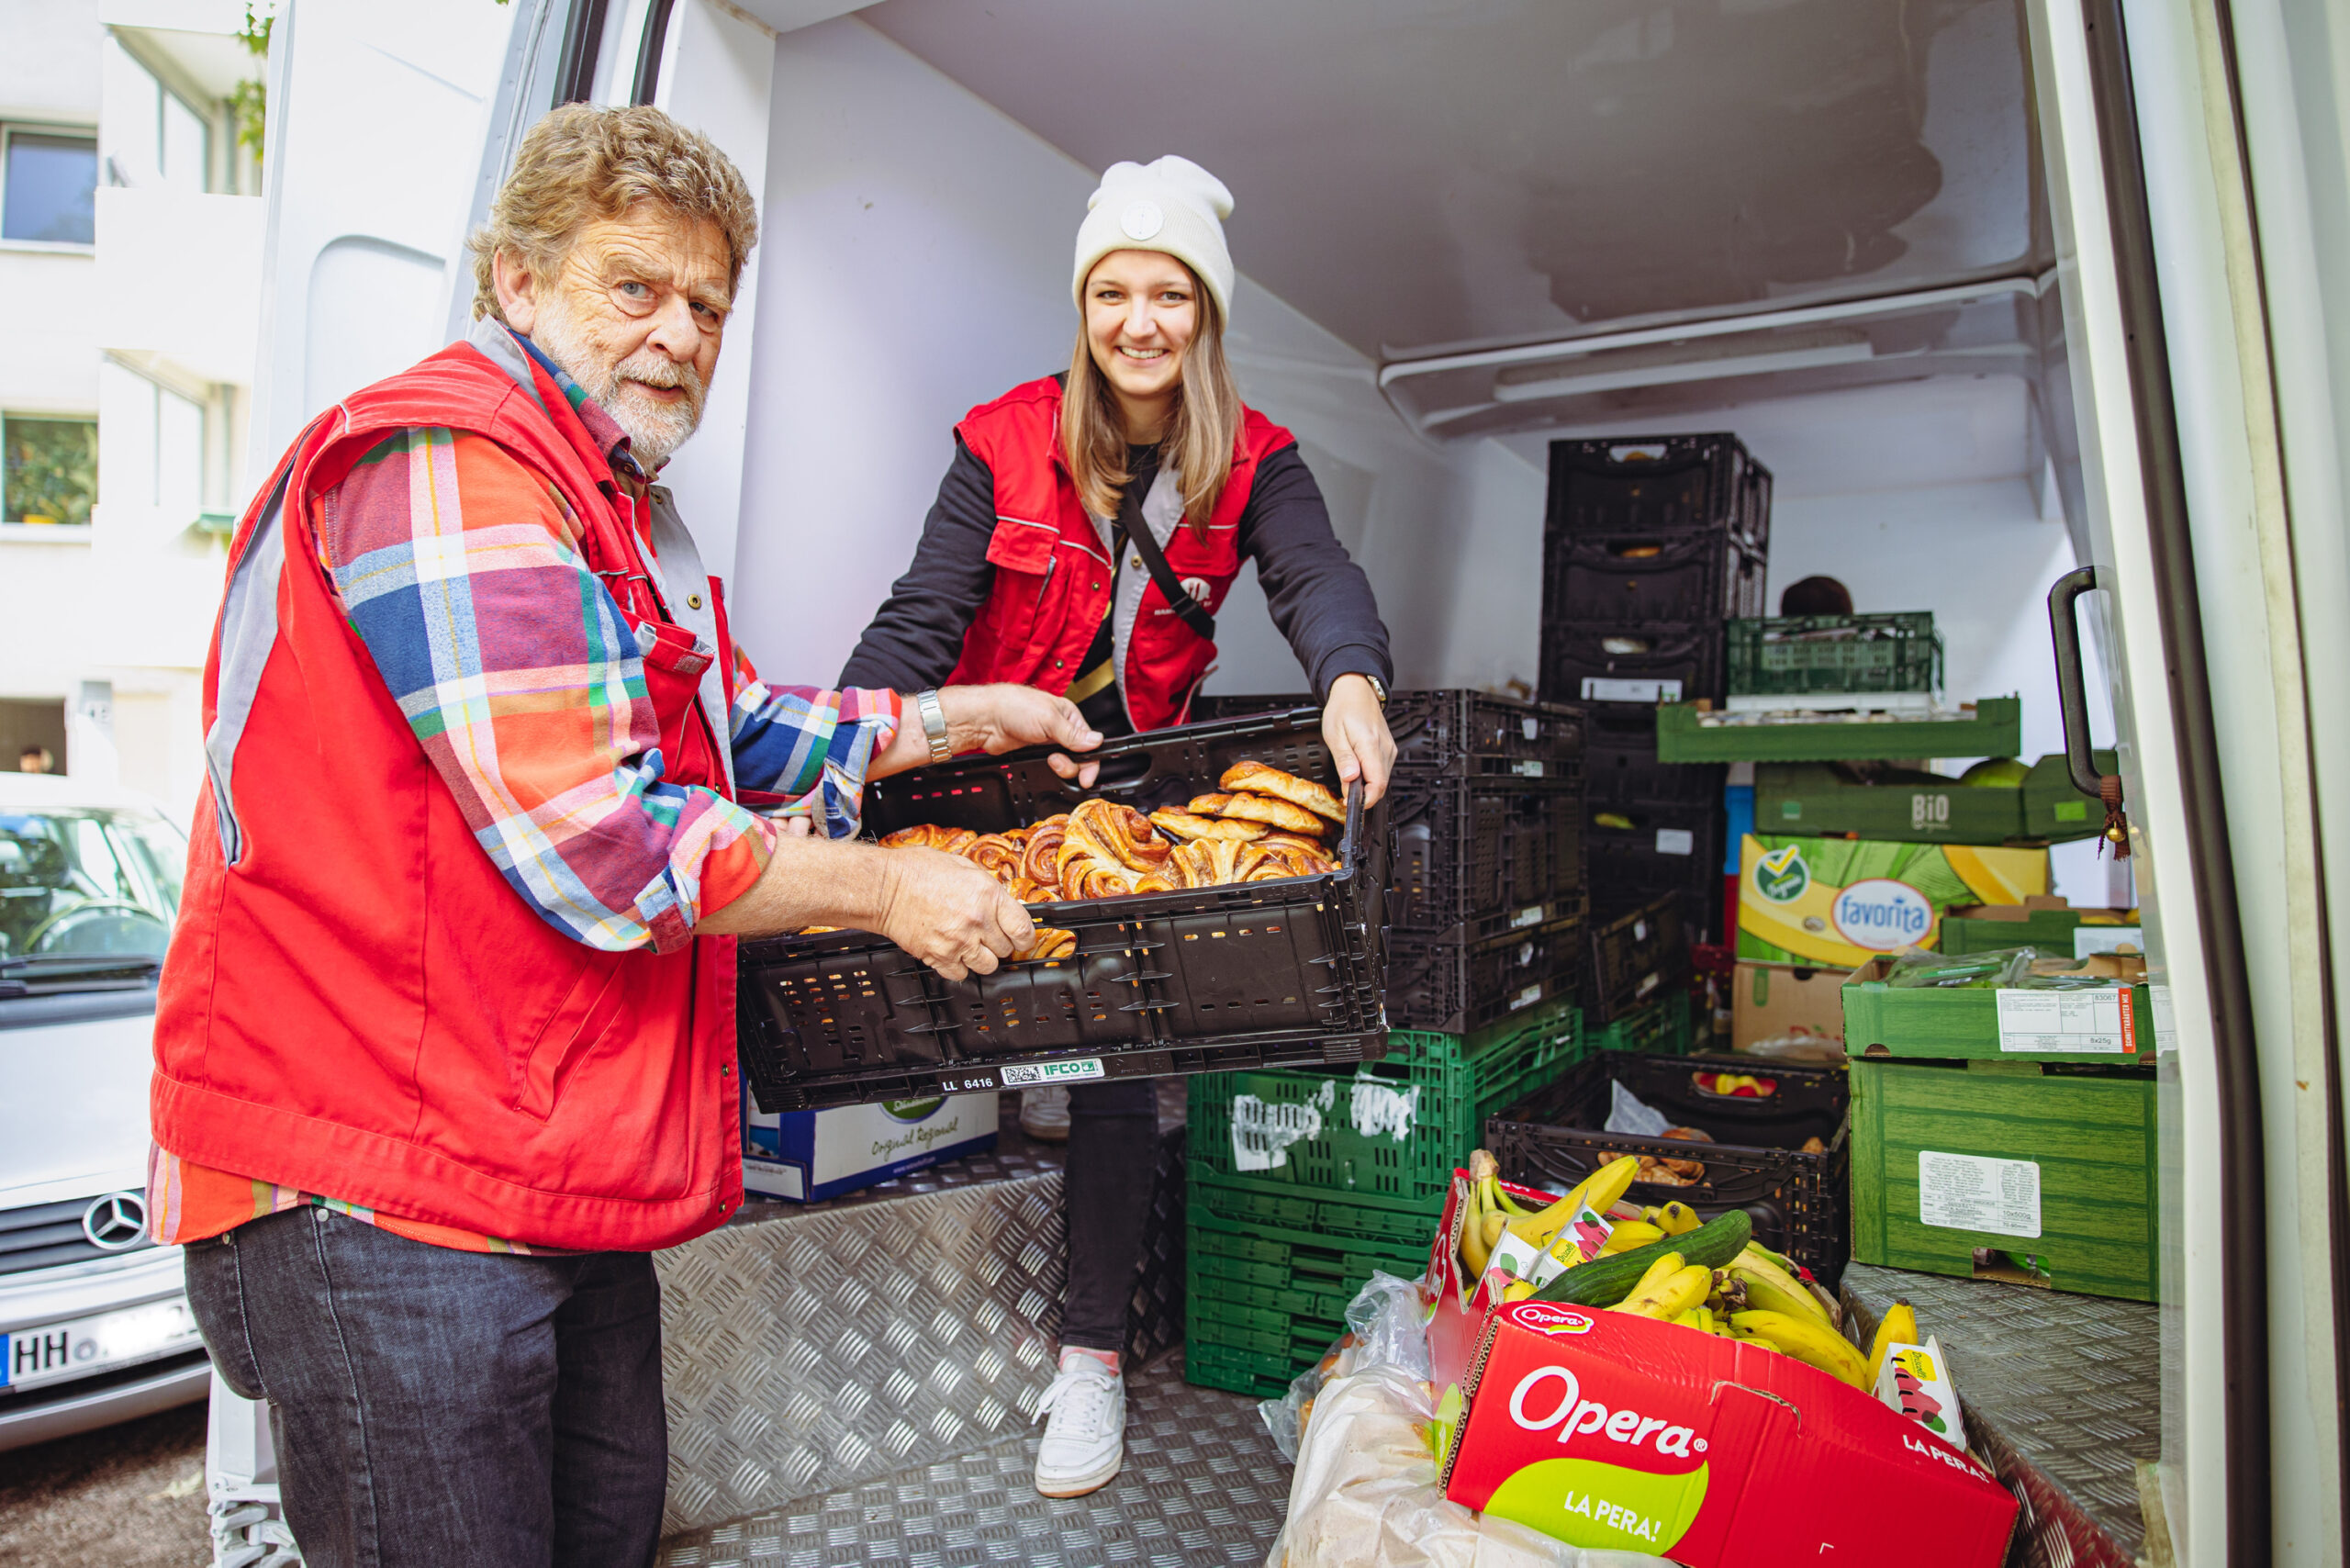 Tafelmitarbeiter Birger Warncke (73) und Foodloose-Mitarbeiterin Kira Loy (27) fahren zusammen Lebensmittel aus.